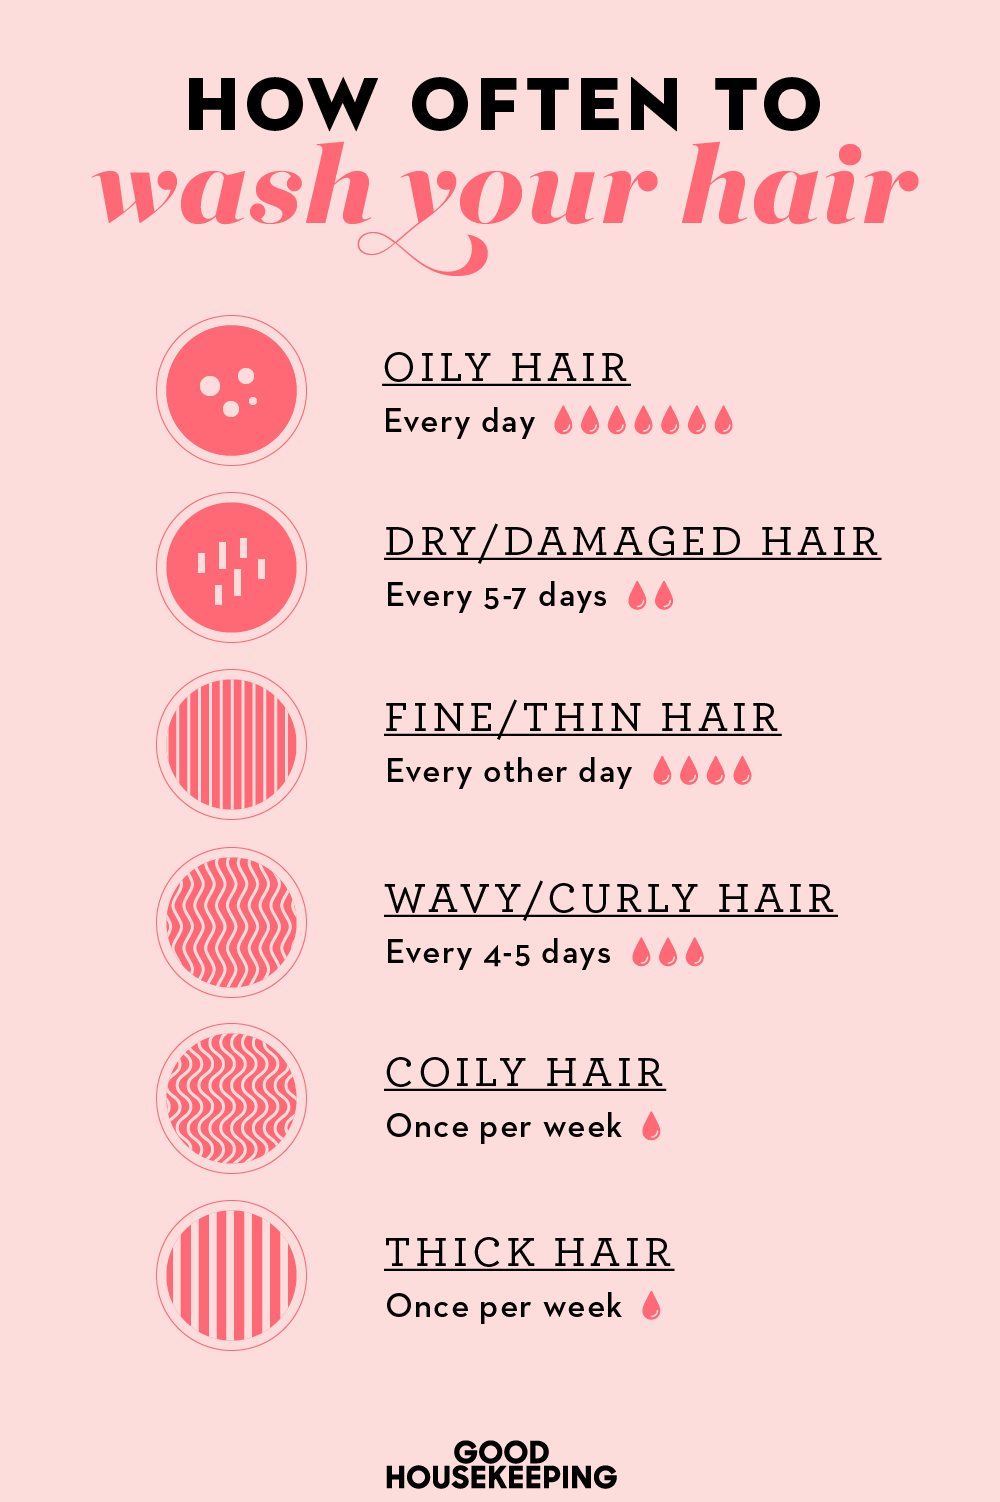 La frecuencia con la que debe lavarse el cabello, según su tipo de cabello